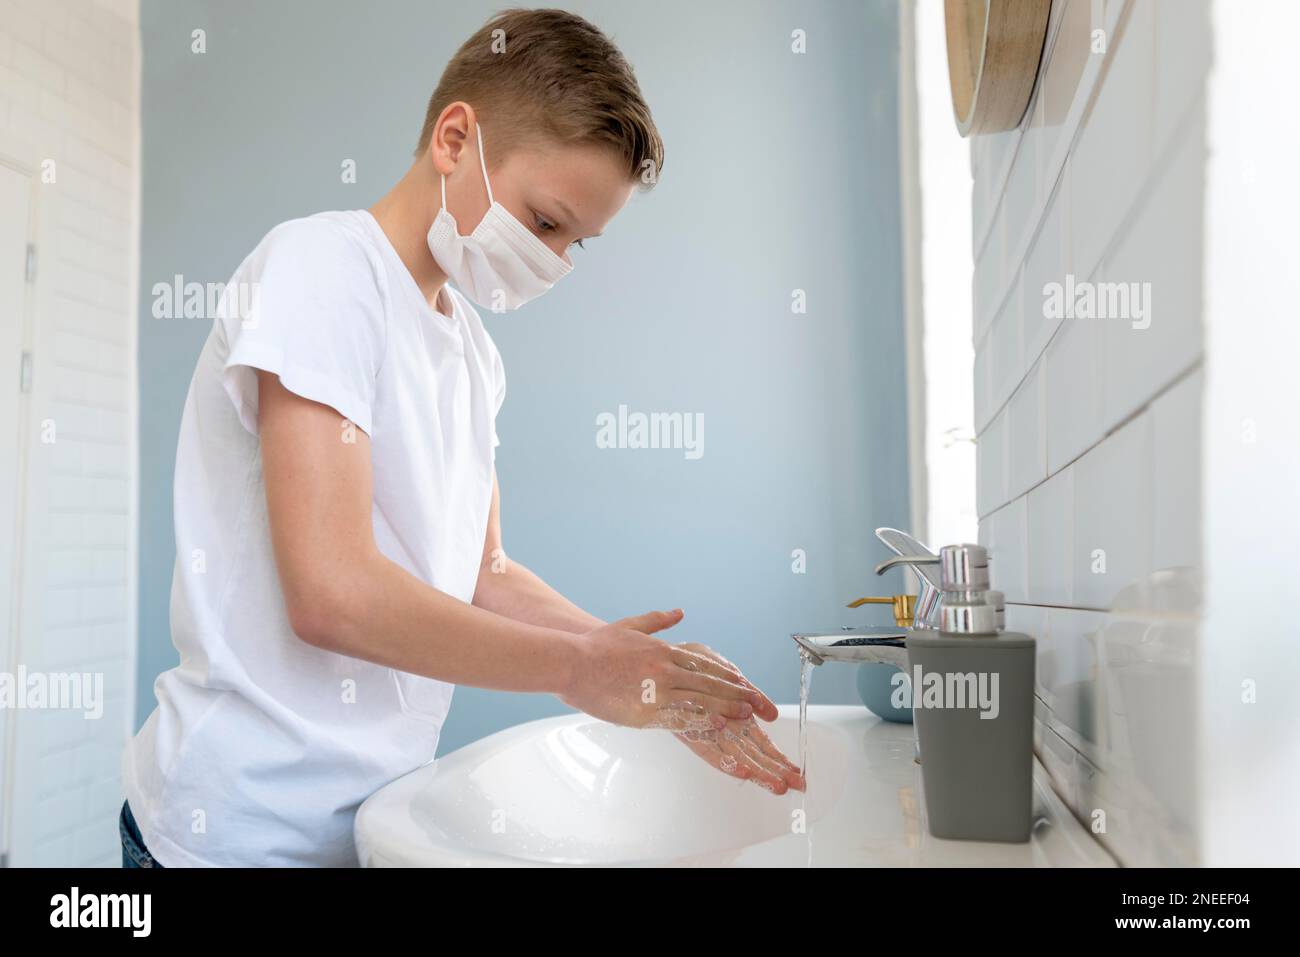 Ein Junge, der eine medizinische Maske trägt und seine Hände wäscht, Seitenansicht. Hochauflösendes Foto Stockfoto